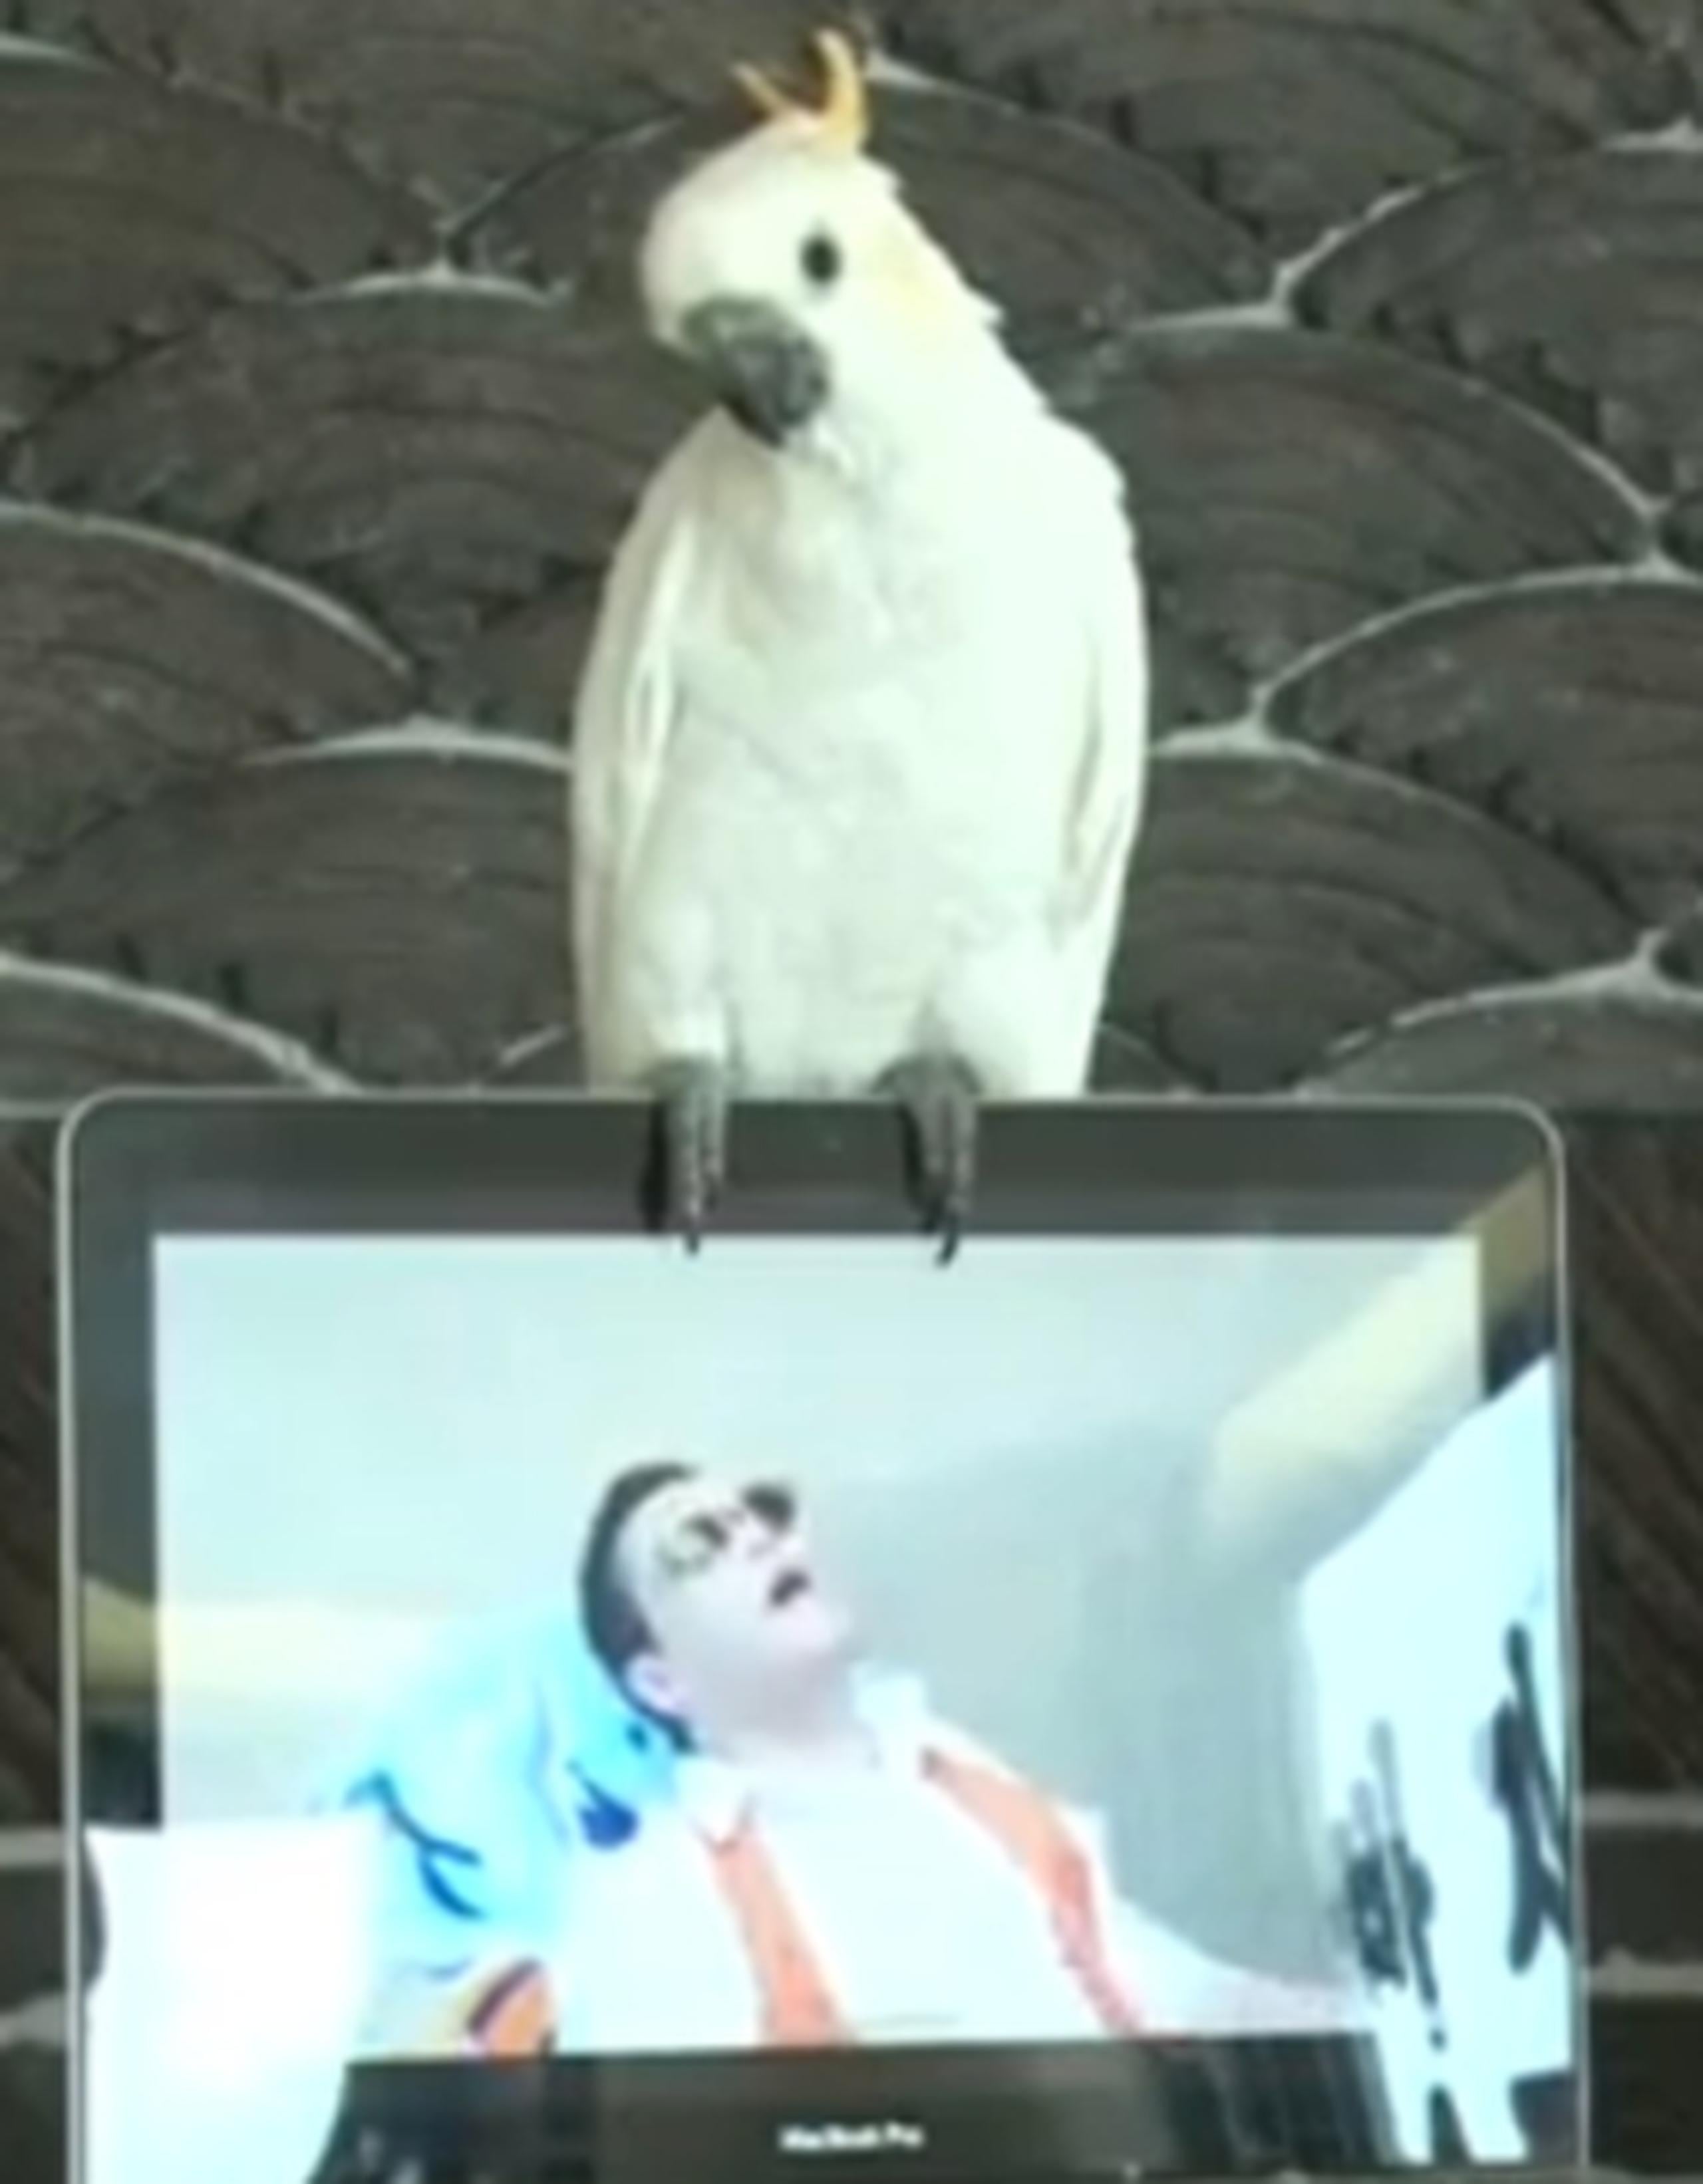 El ave ha sido una sensación en la web. (Youtube)